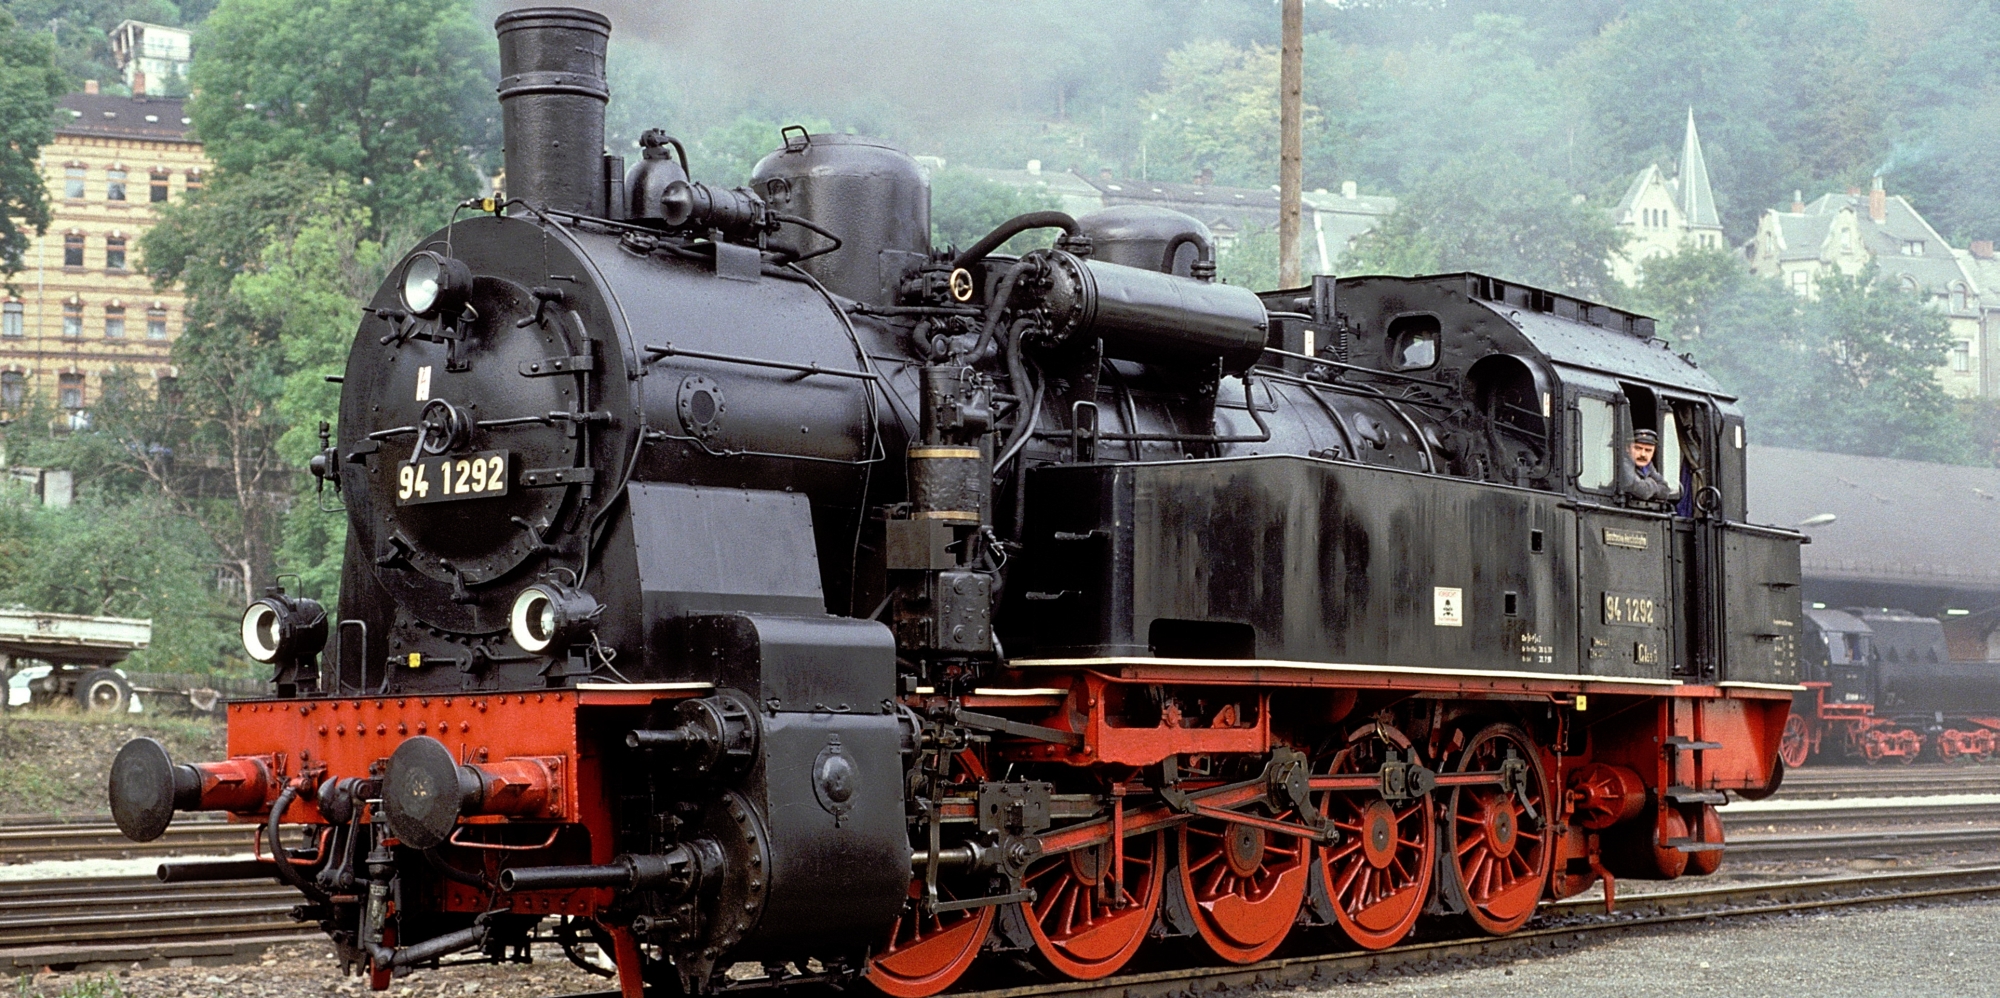 94 1292 in September 1990 in Greiz